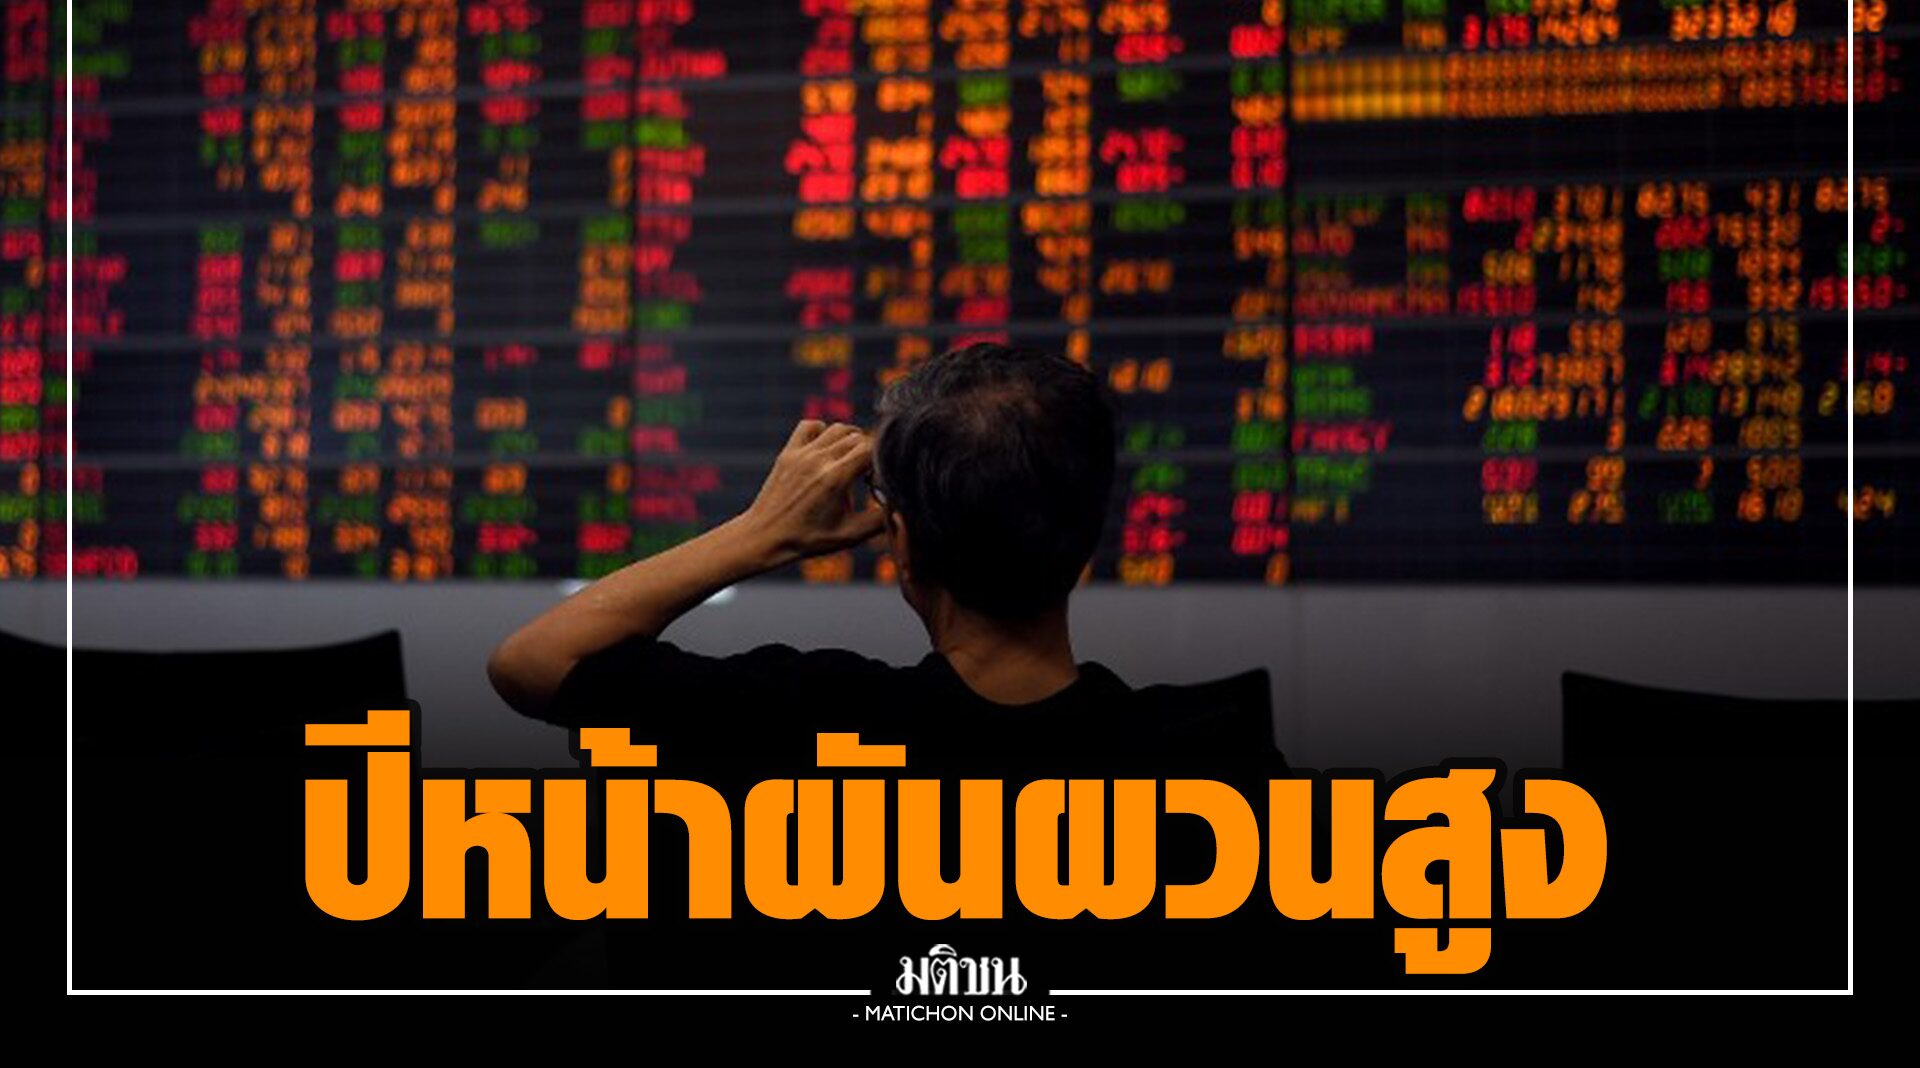 ‘ตลาดหลักทรัพย์ฯ’ ชี้หุ้นไทยปี 65 ผันผวนสูงตามแรงปรับดอกเบี้ย รุกปั้นตัวเชื่อมตลาดทุน-คริปโทฯ